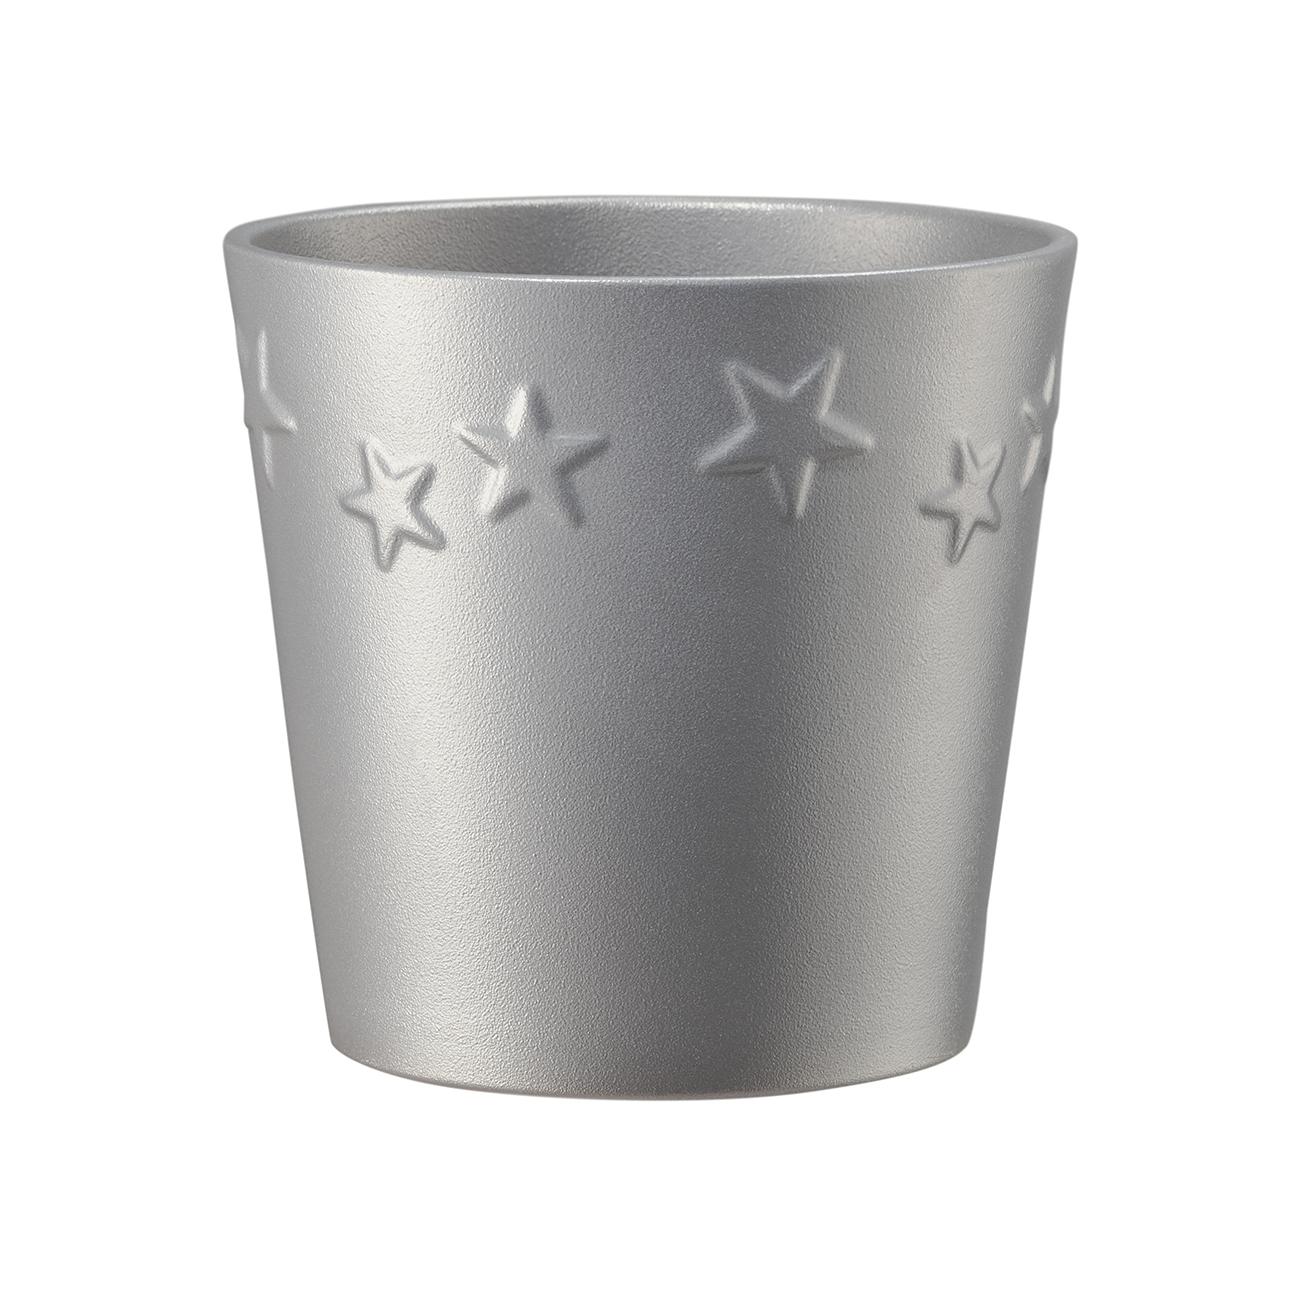 Ghiveci SK Starlight, ceramica, argintiu, diametru 14 cm, 13 cm argintiu